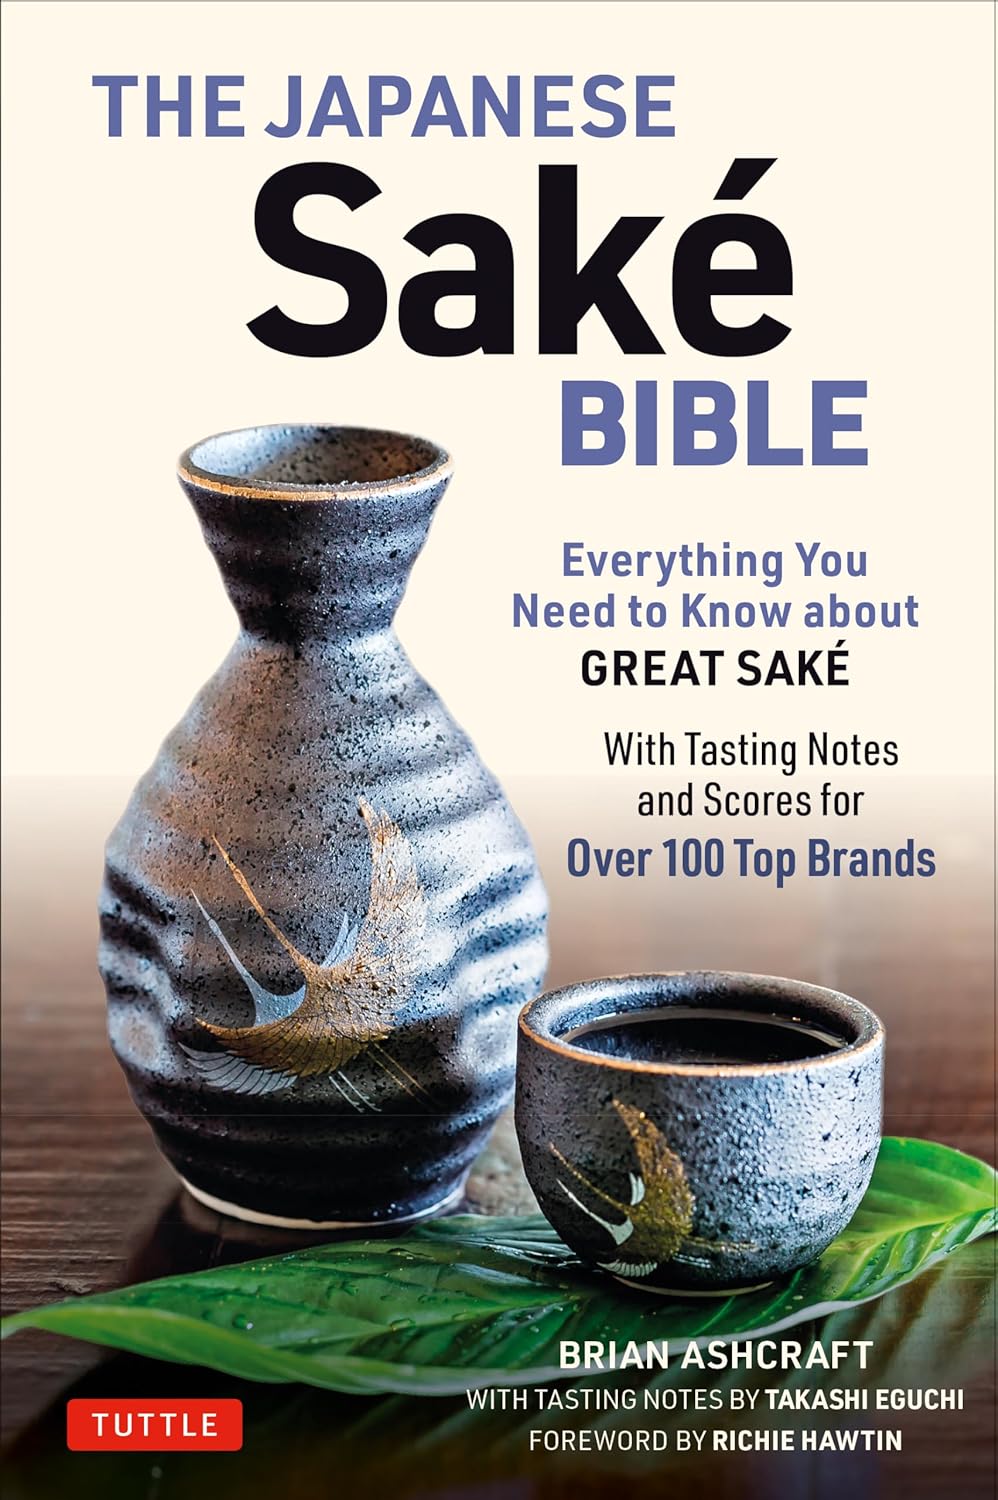 The Japanese Sake Bible: Everything You Need to Know About Great Sake (Brian Ashcraft, Takashi Eguchi)